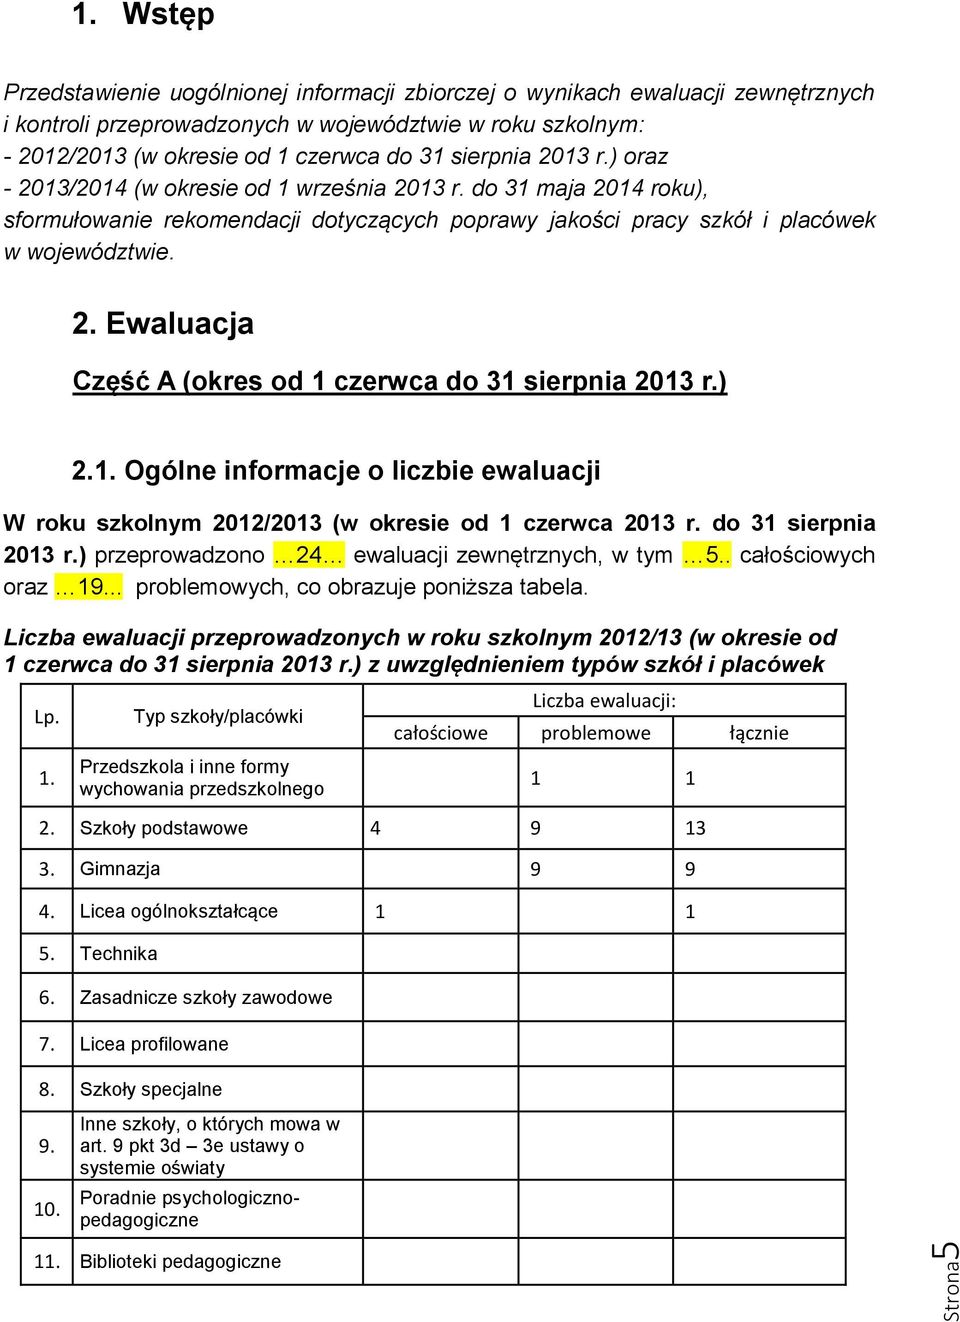 ) 2.1. Ogólne informacje o liczbie ewaluacji W roku szkolnym 2012/2013 (w okresie od 1 czerwca 2013 r. do 31 sierpnia 2013 r.) przeprowadzono 24 ewaluacji zewnętrznych, w tym 5.. całościowych oraz 19.